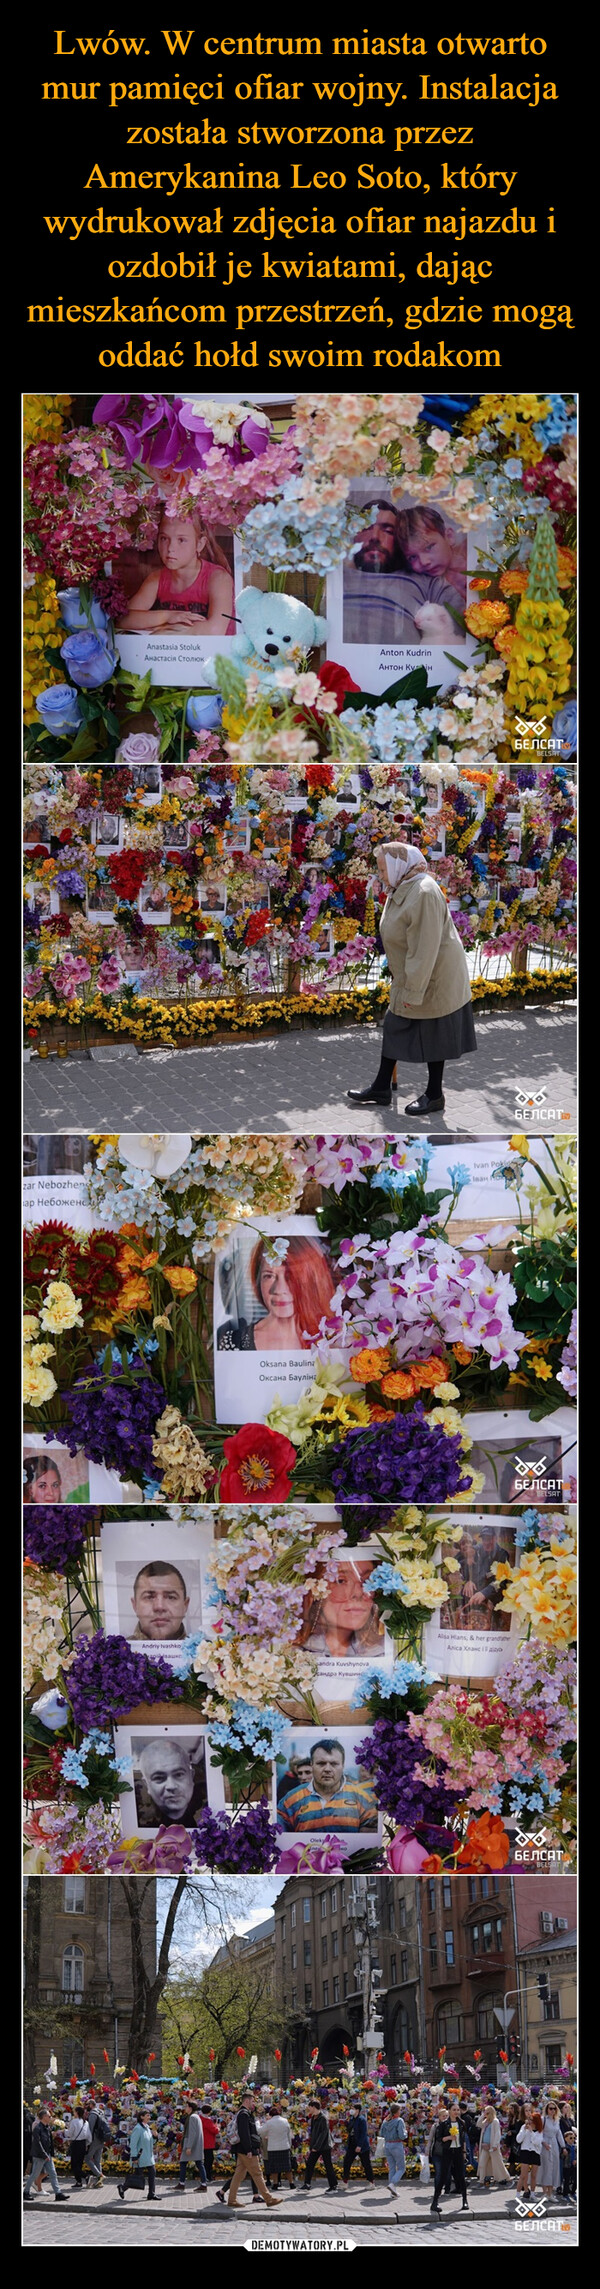 Lwów. W centrum miasta otwarto mur pamięci ofiar wojny. Instalacja została stworzona przez Amerykanina Leo Soto, który wydrukował zdjęcia ofiar najazdu i ozdobił je kwiatami, dając mieszkańcom przestrzeń, gdzie mogą oddać hołd swoim rodakom